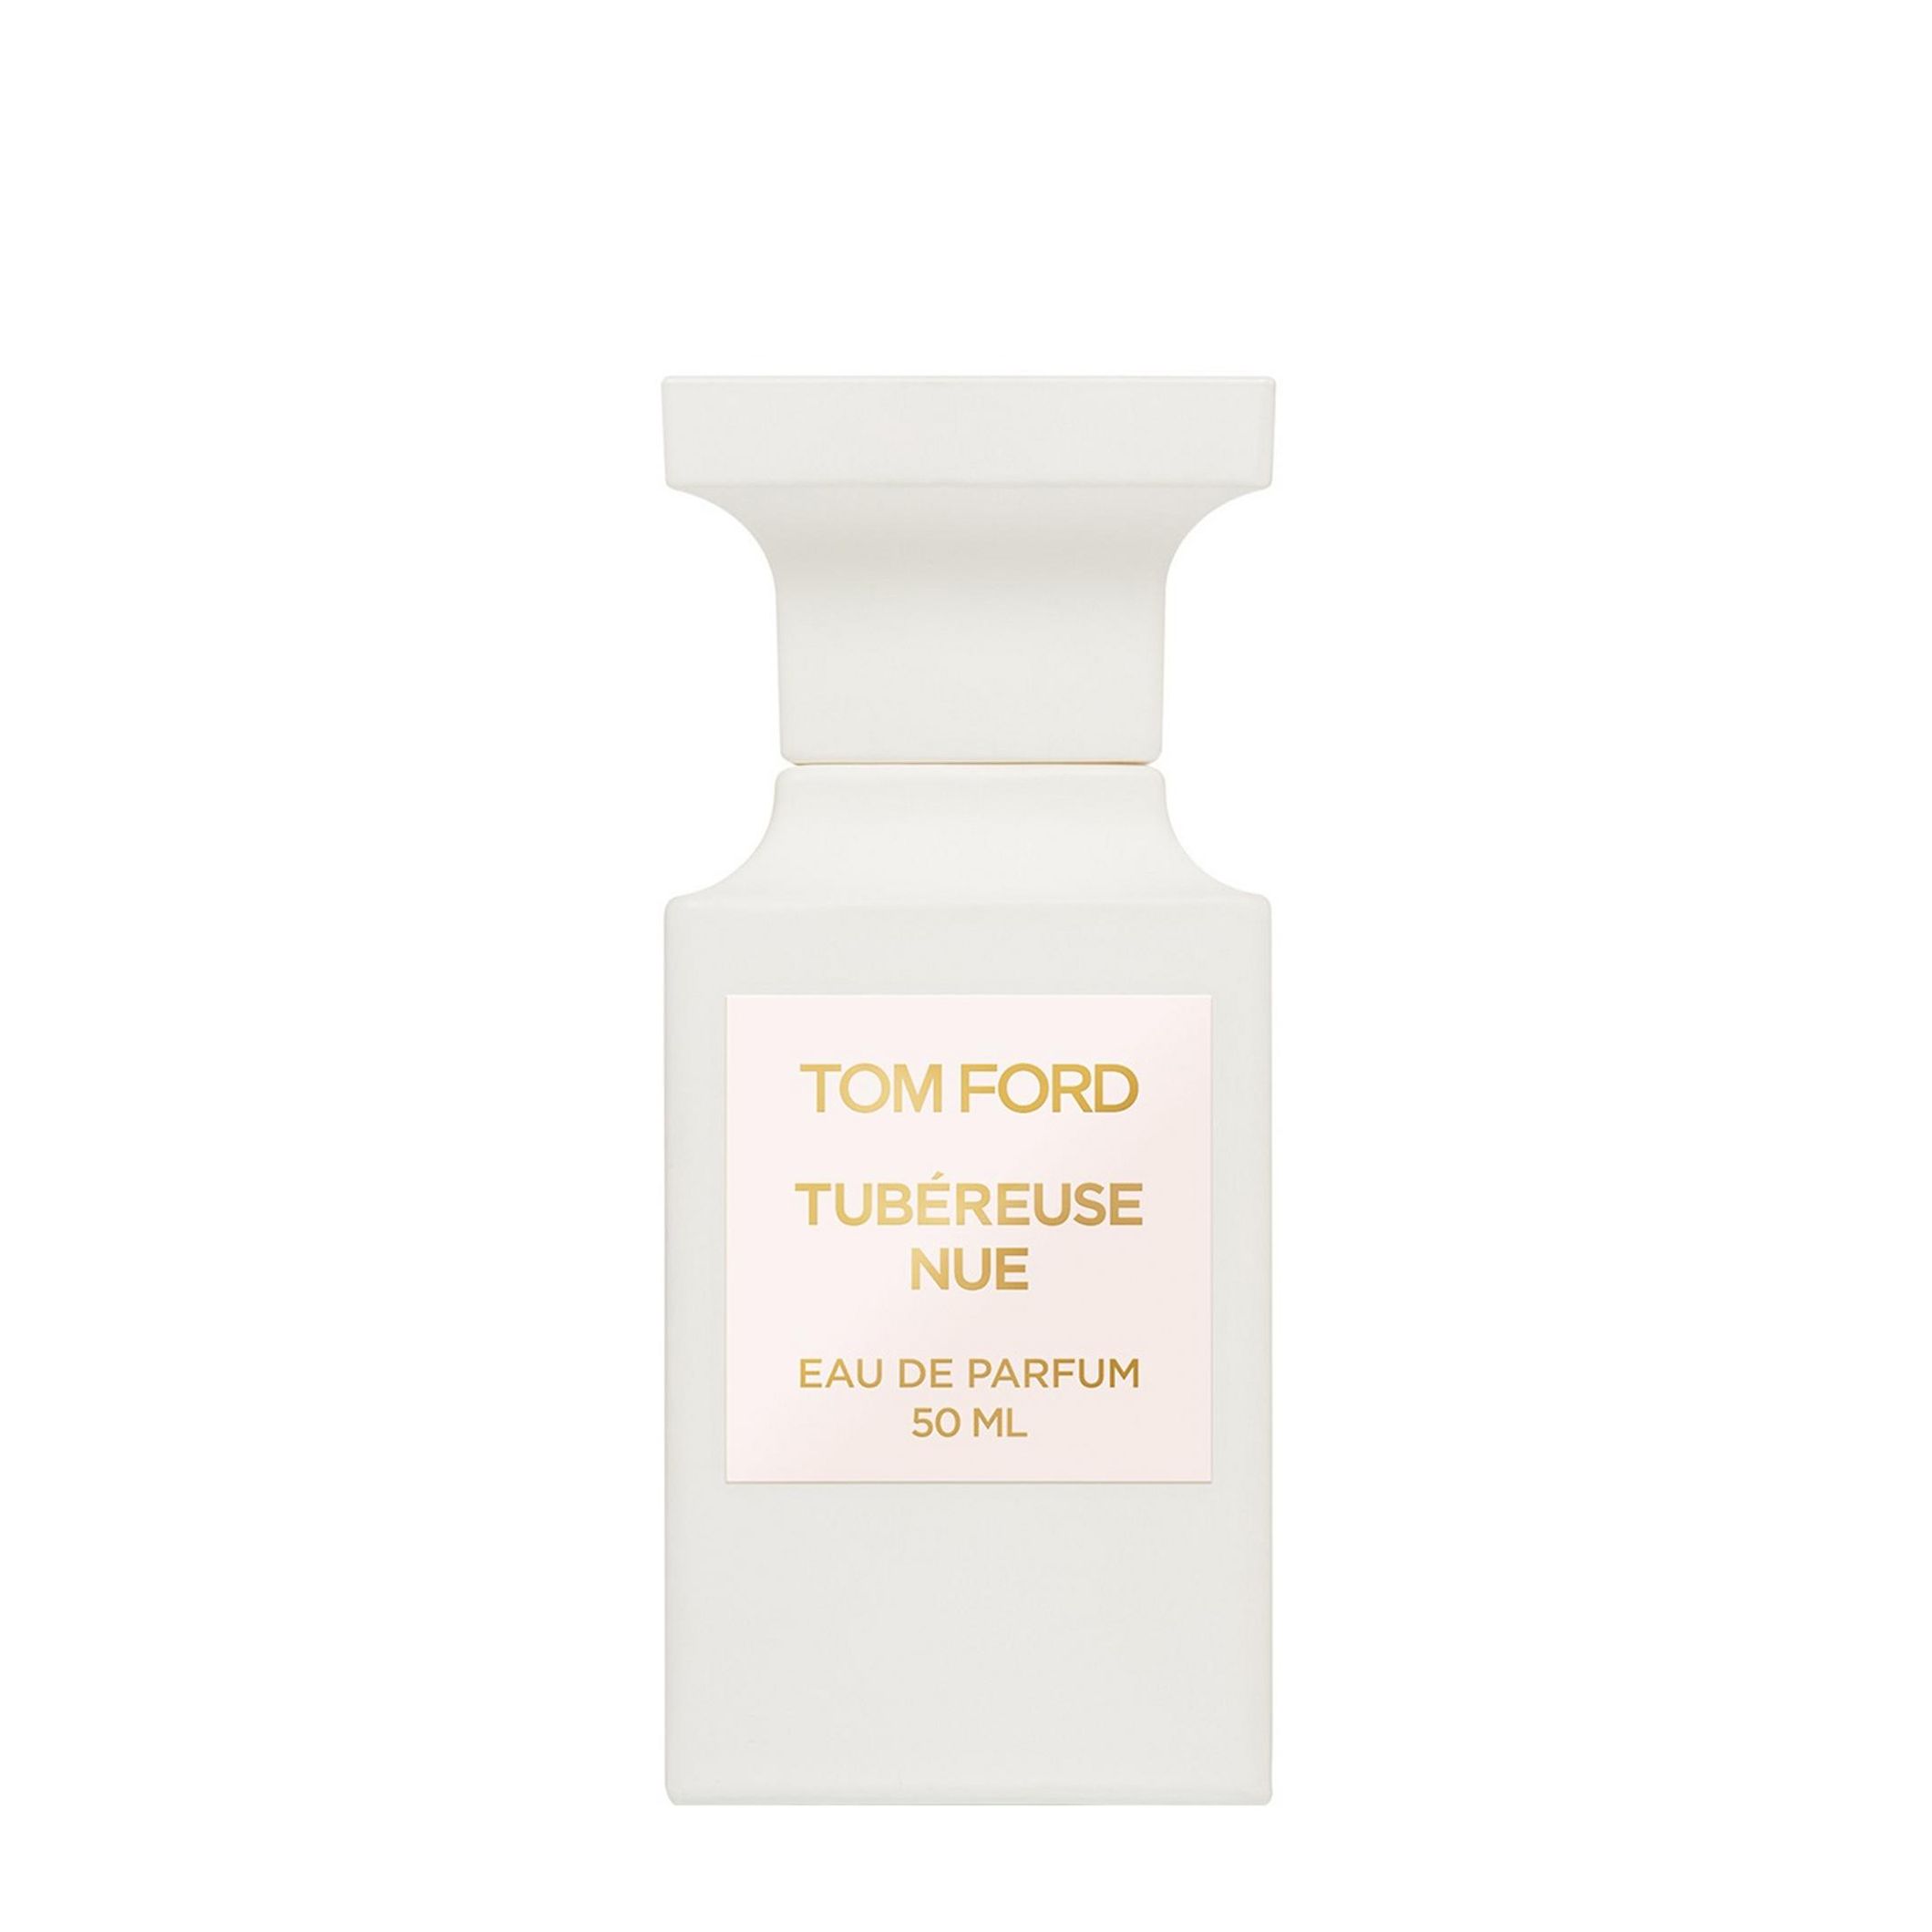 Вода парфюмерная Tom Ford Tubereuse Nue, унисекс, 50 мл tom ford tubereuse nue 50